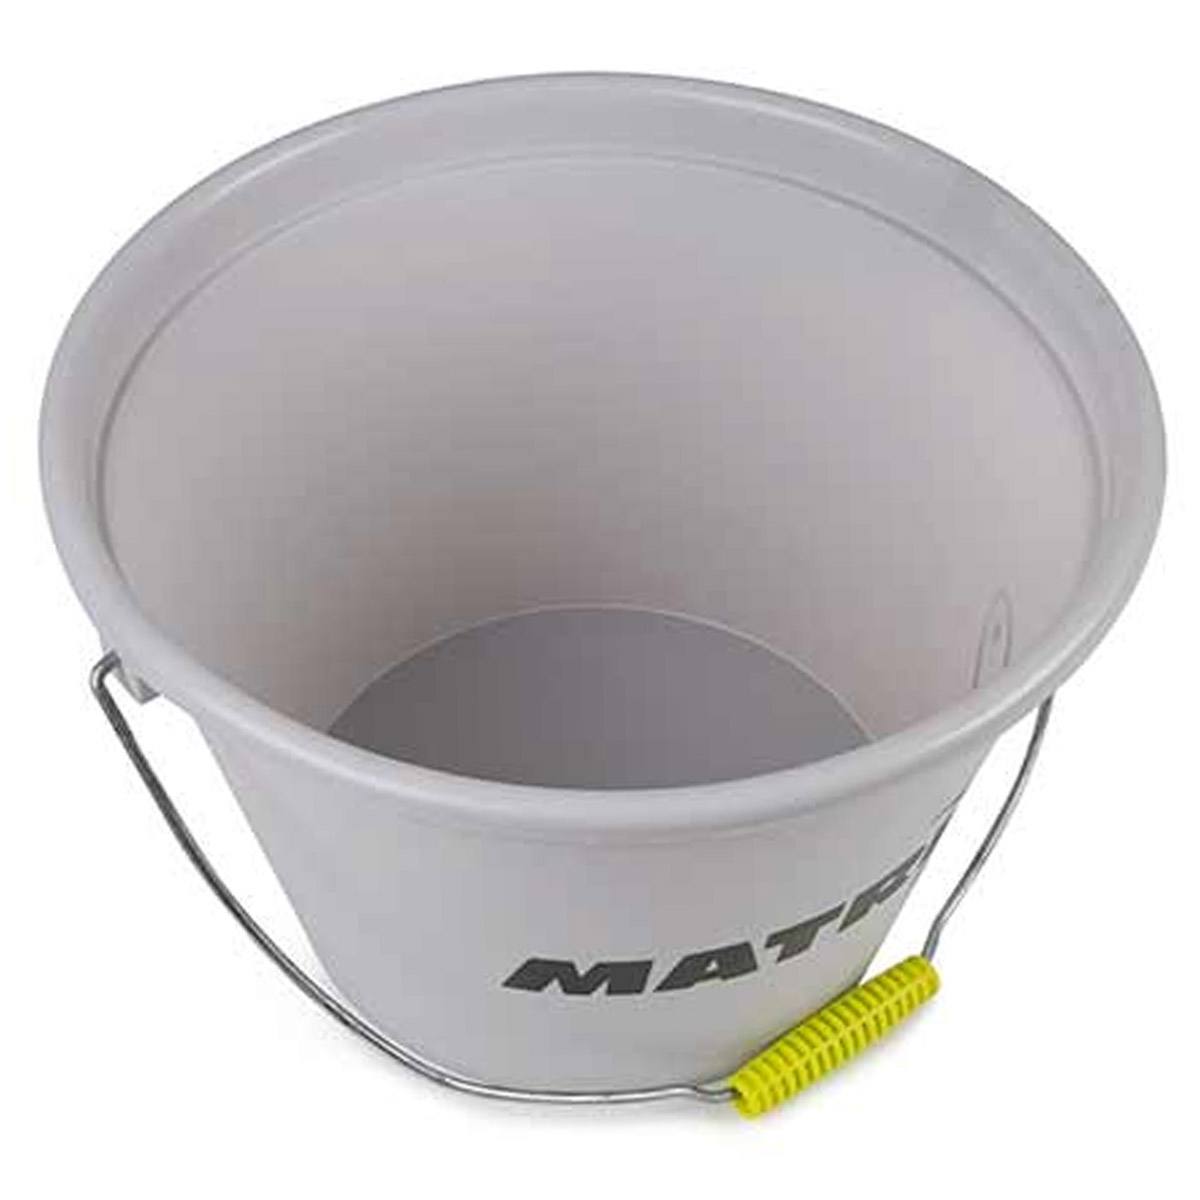 Matrix 17 Liter Bait Bucket